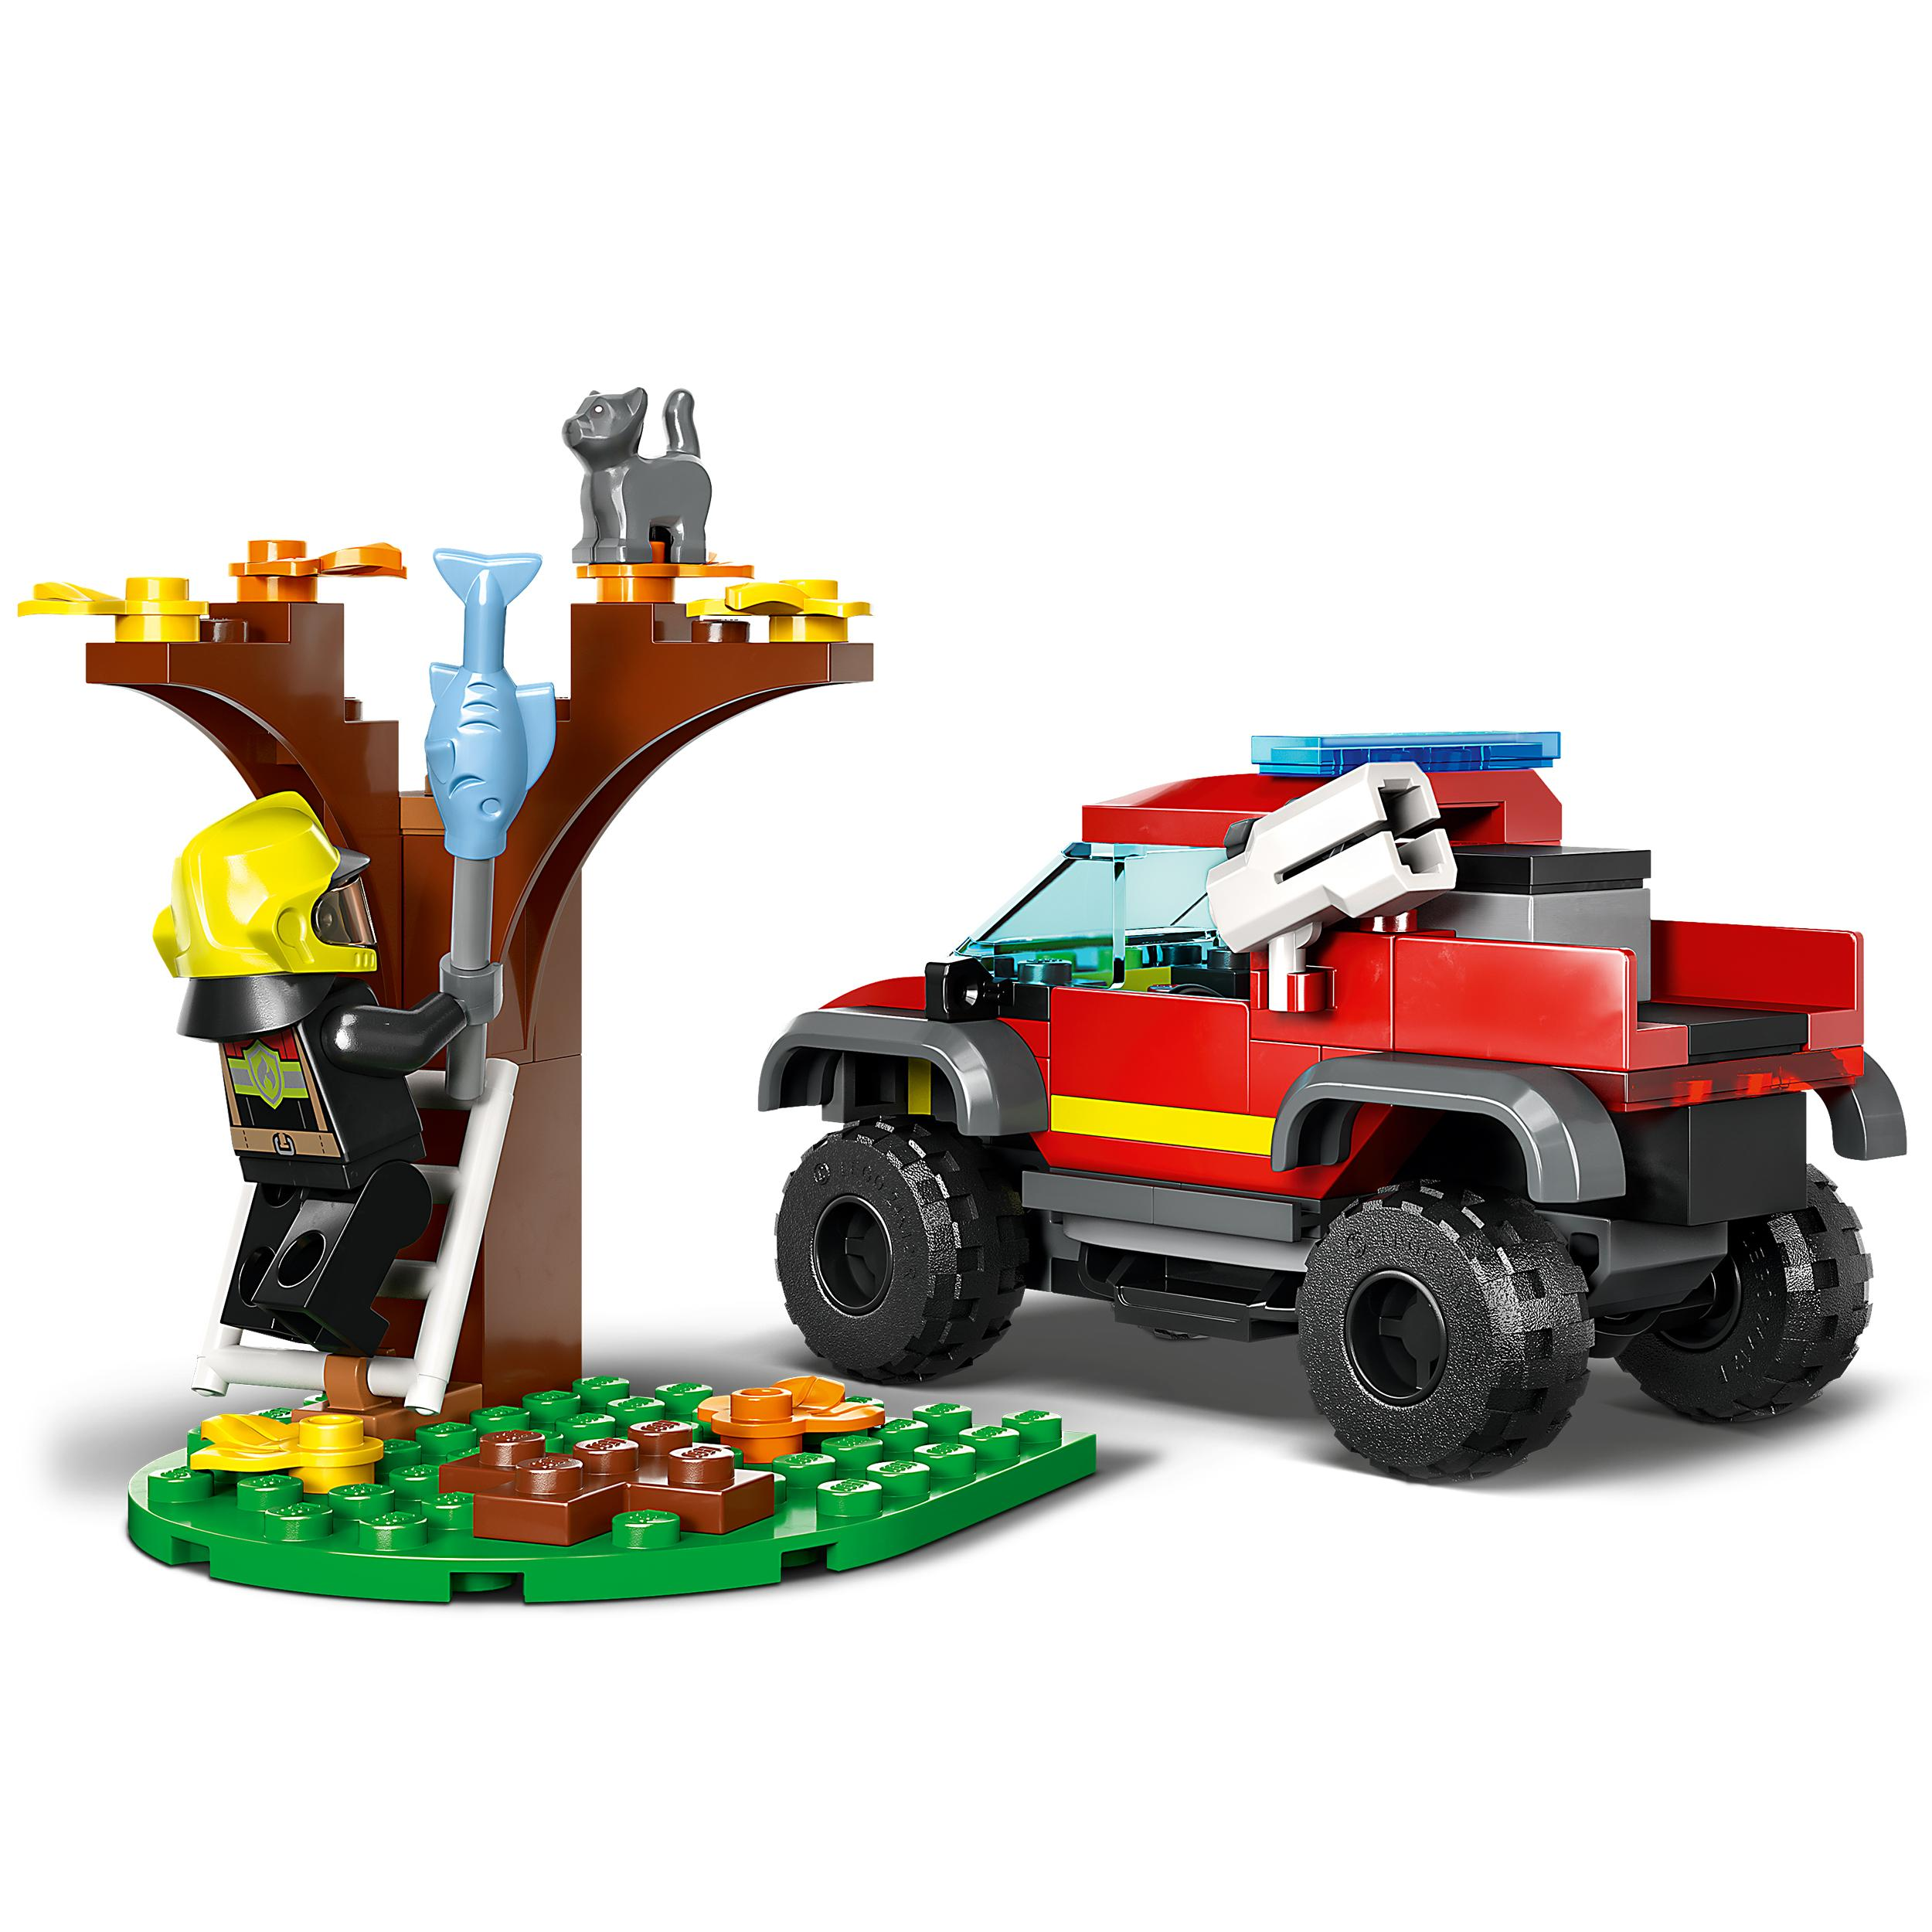 60393 Feuerwehr-Pickup LEGO Bausatz, Mehrfarbig City